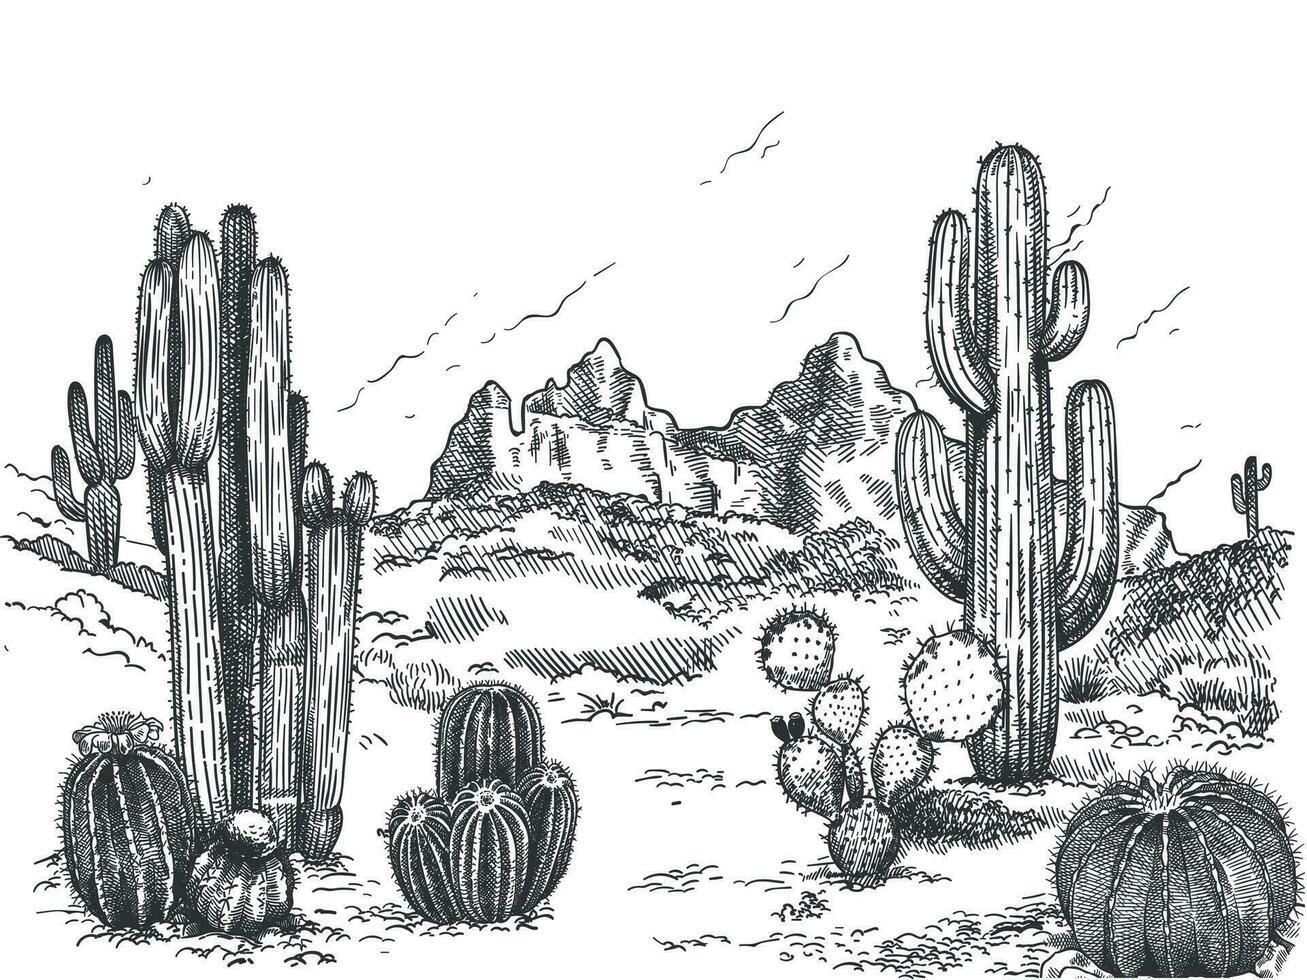 deserto paesaggio. mano disegnato messicano prateria con impianti e fioritura cactus, spinoso succulente natura selvaggio ovest schizzo vettore sfondo